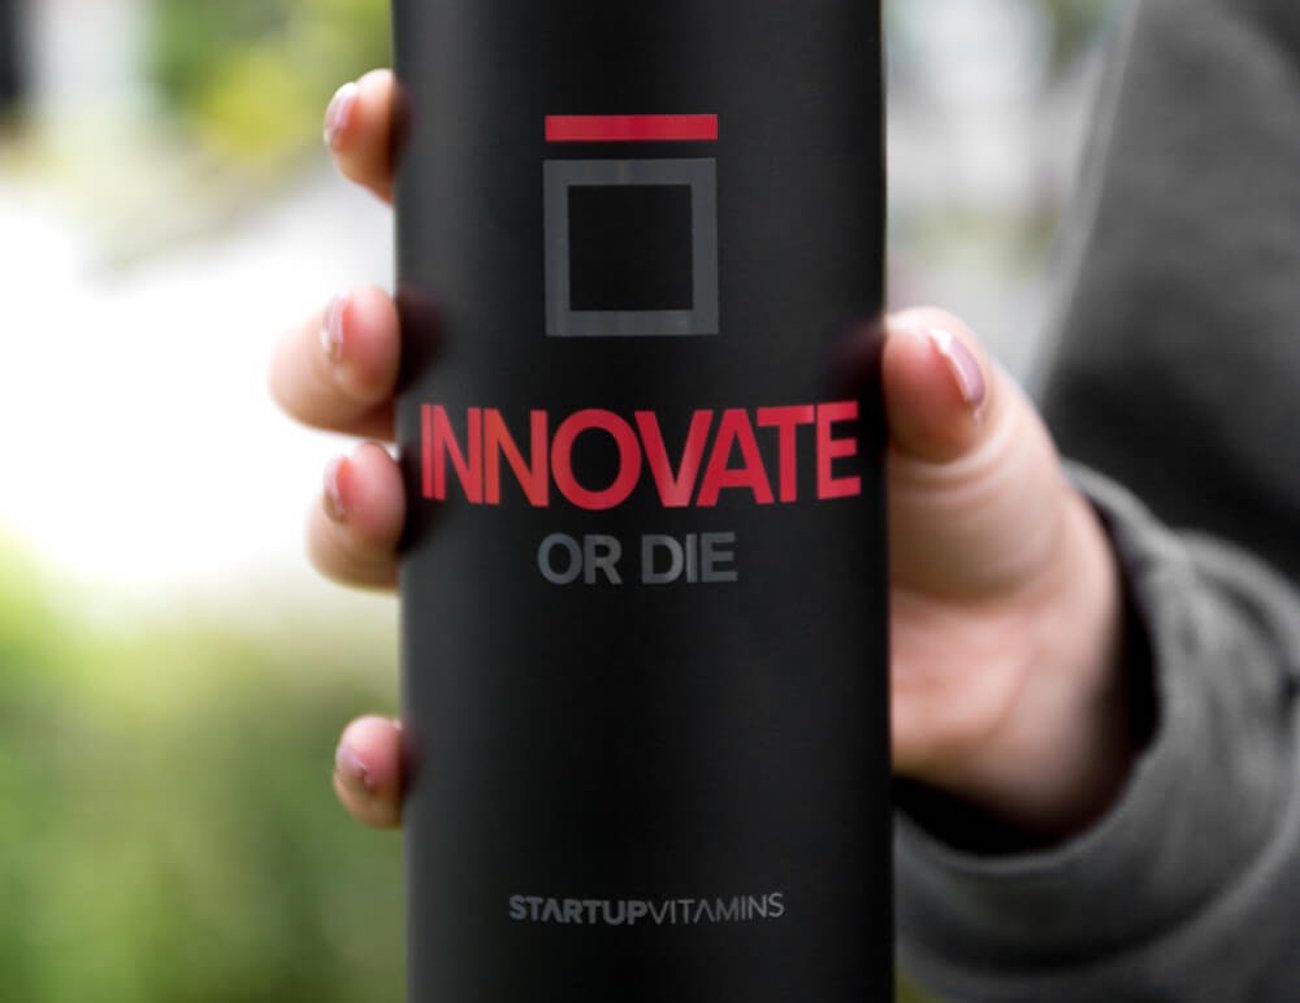 Innovate-or-Die-Travel-Mug-03.jpg